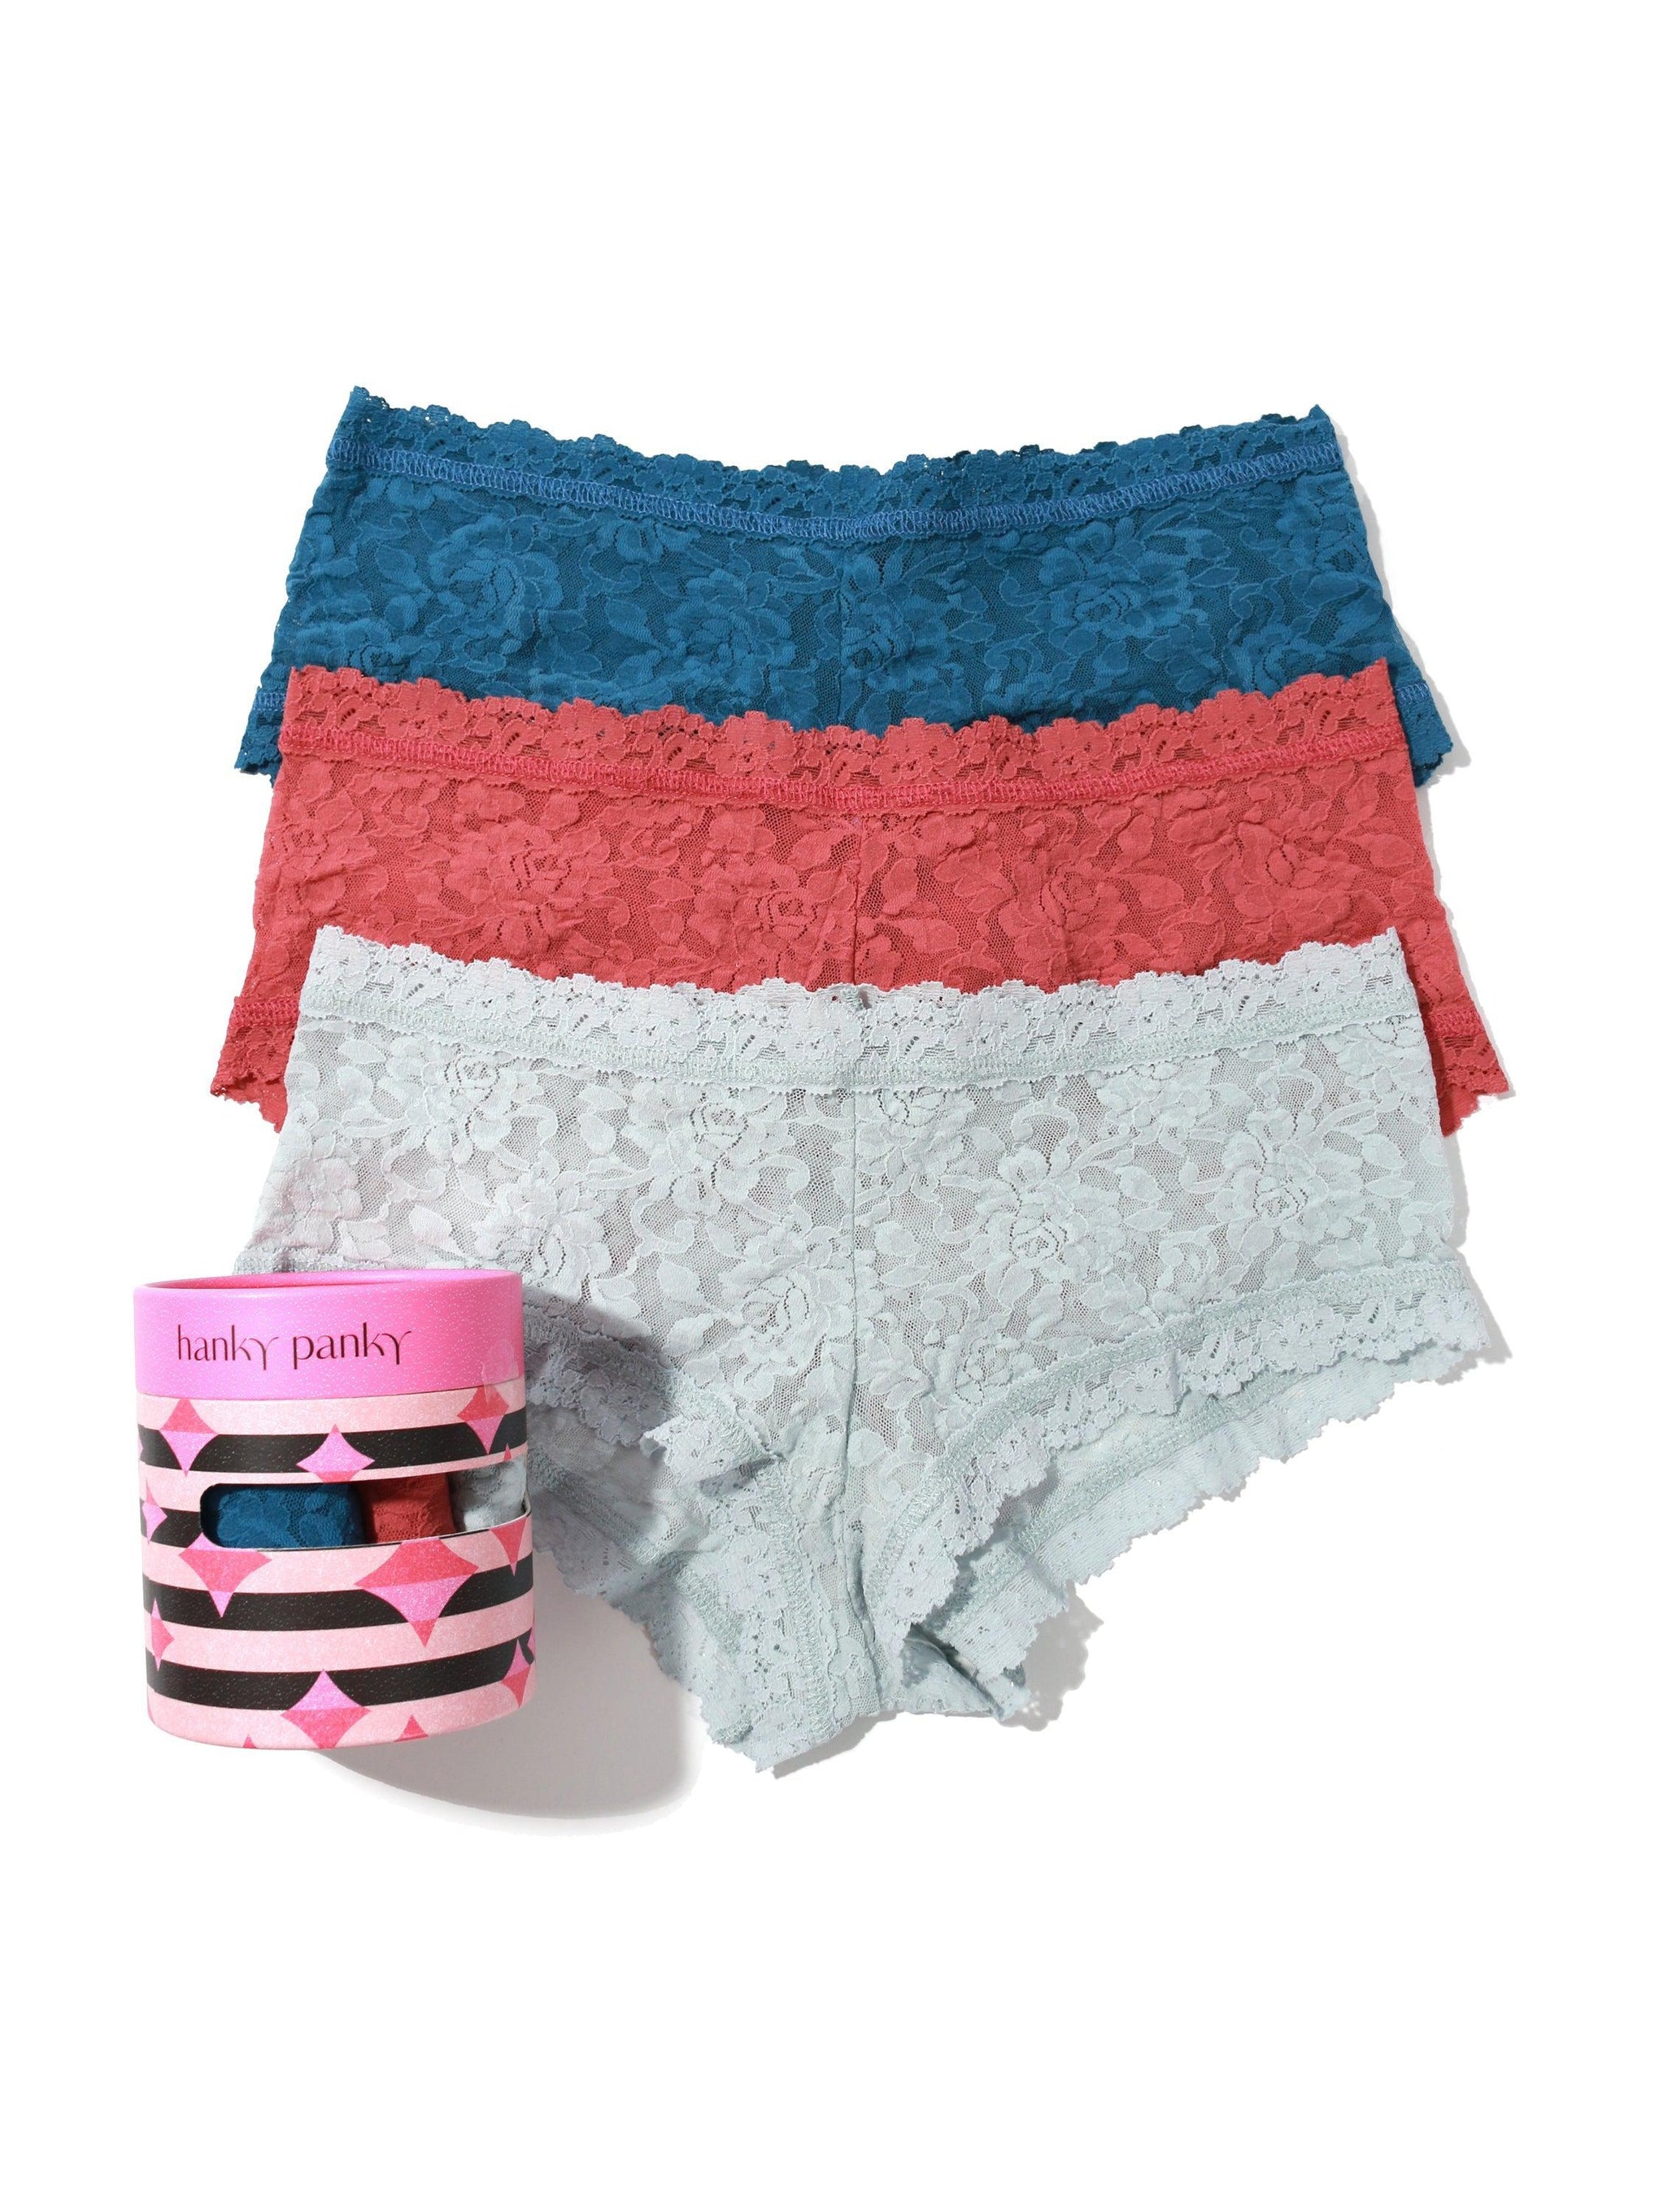 Buy Fit For Her Women's Nylon net Underwear Panties Boyshort Lace